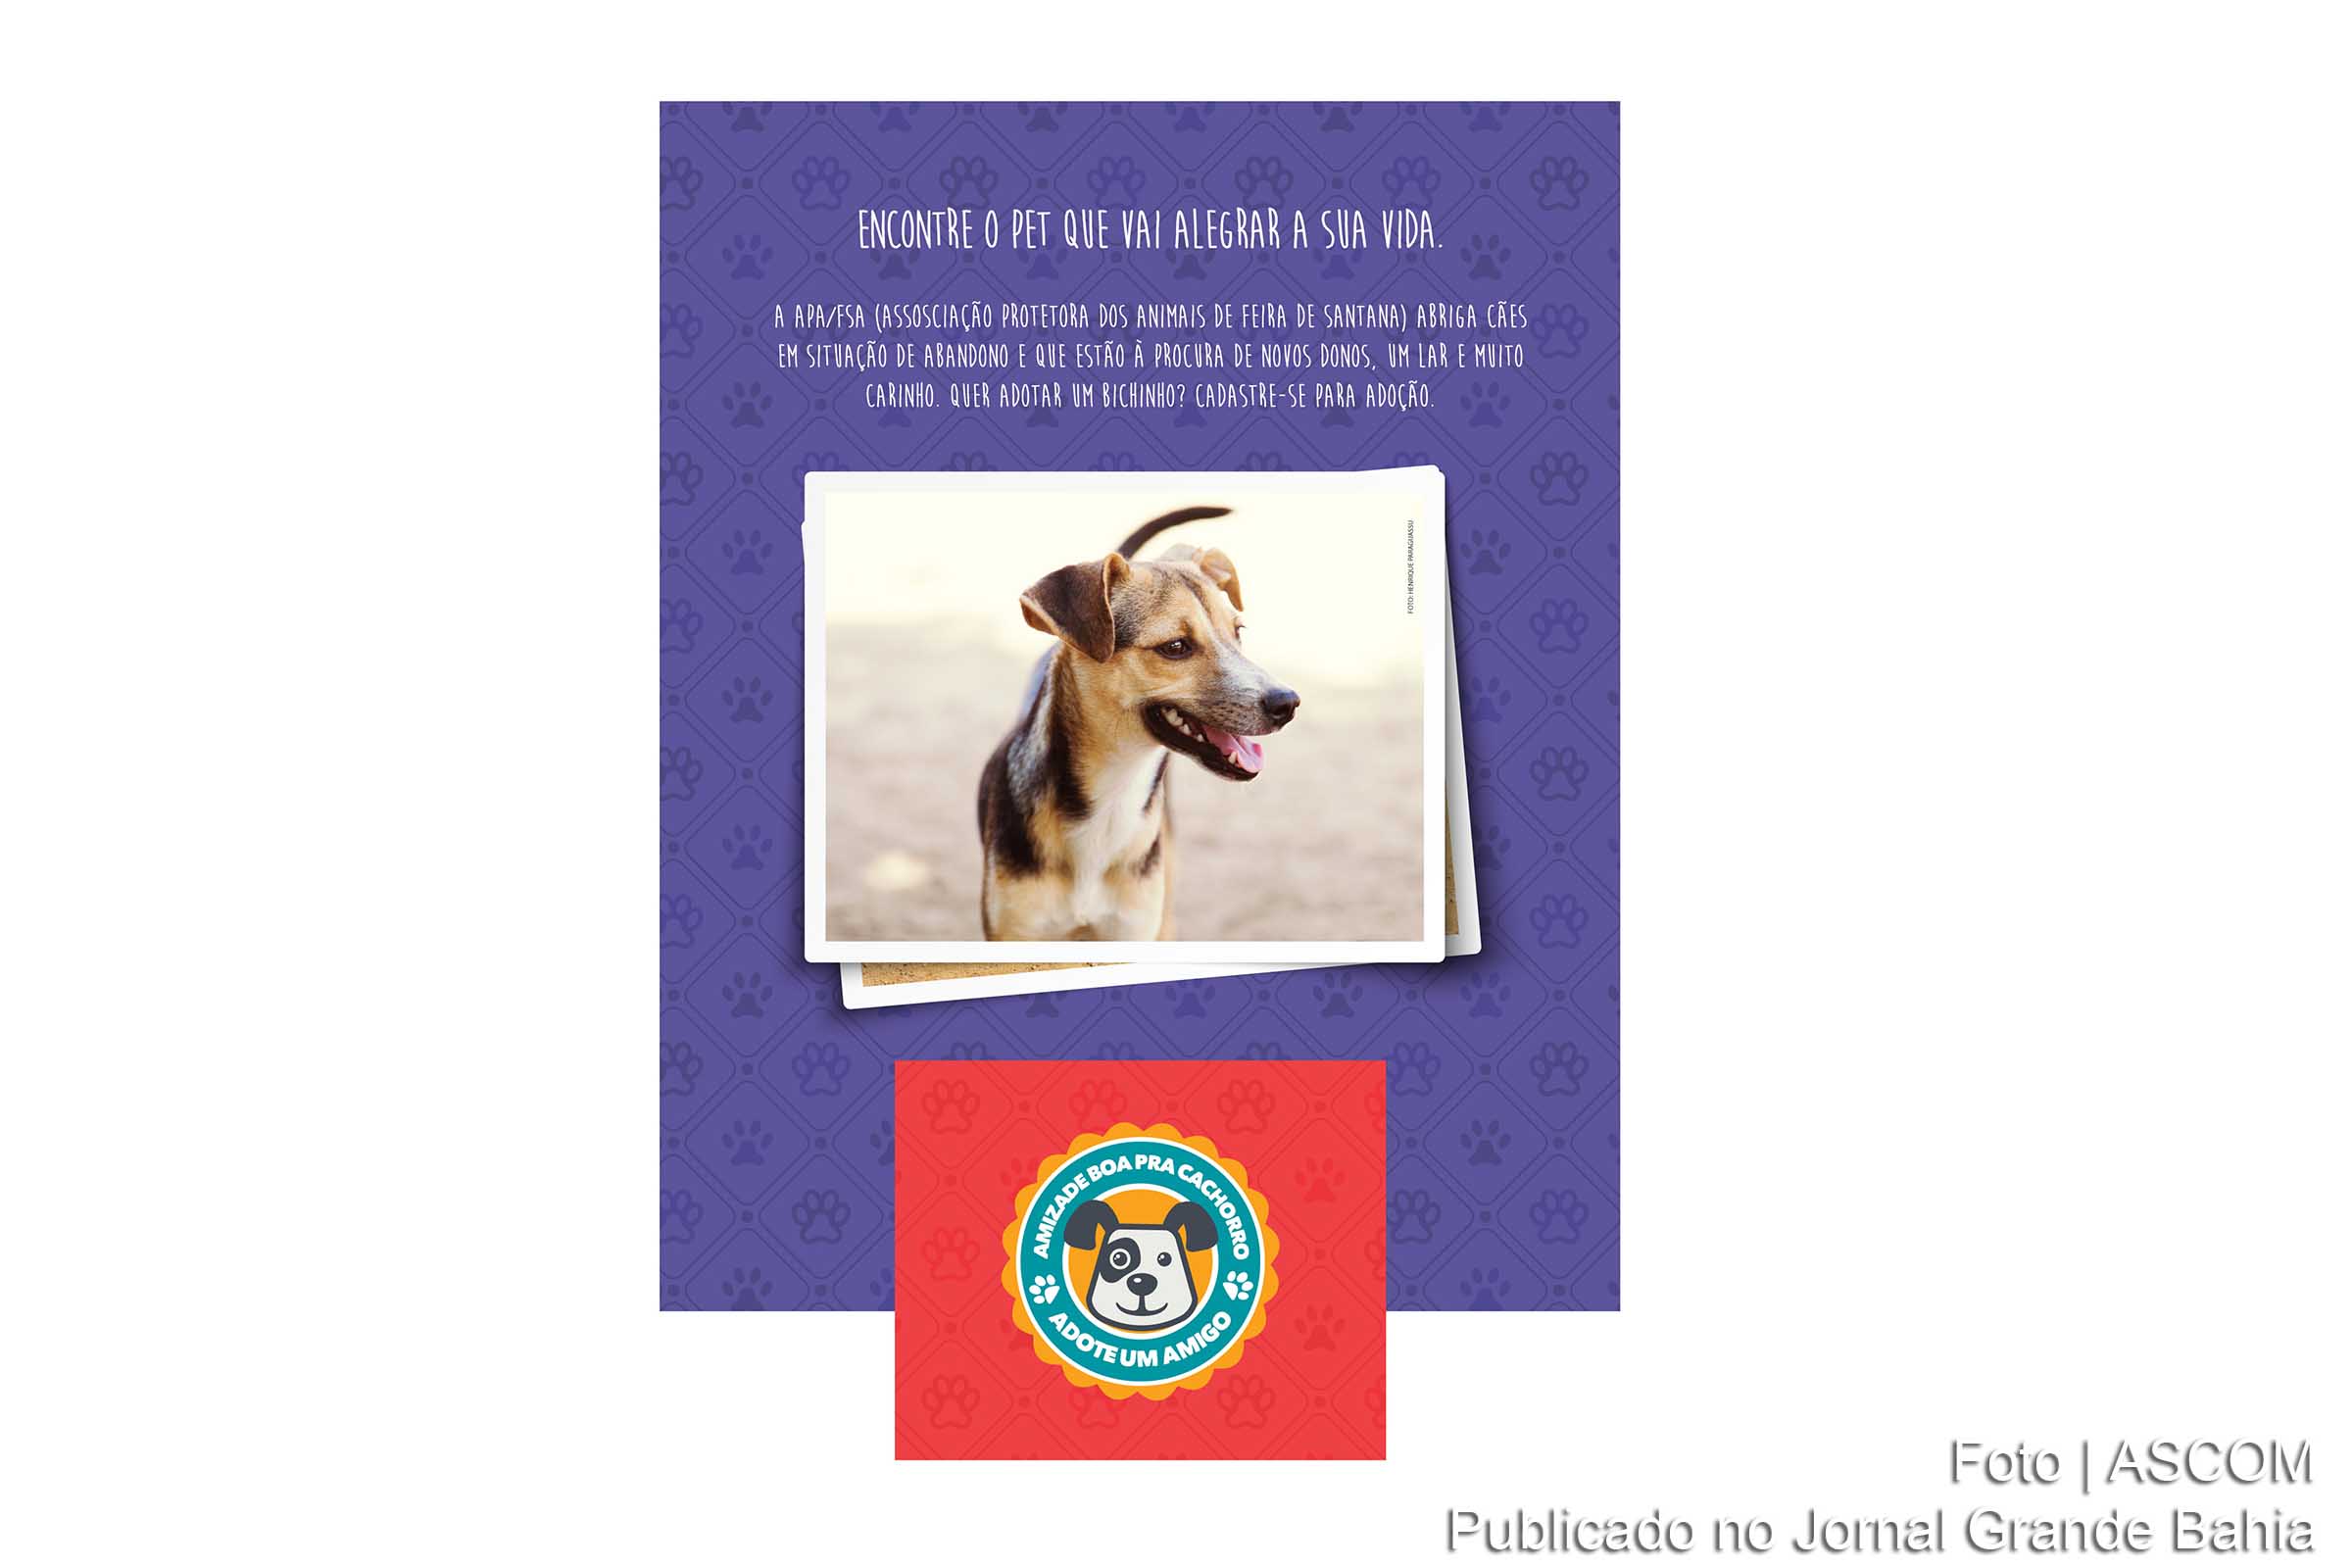 Ação “Amizade Boa pra Cachorro” é uma parceria do Boulevard com a Associação Protetora dos Animais de Feira de Santana.